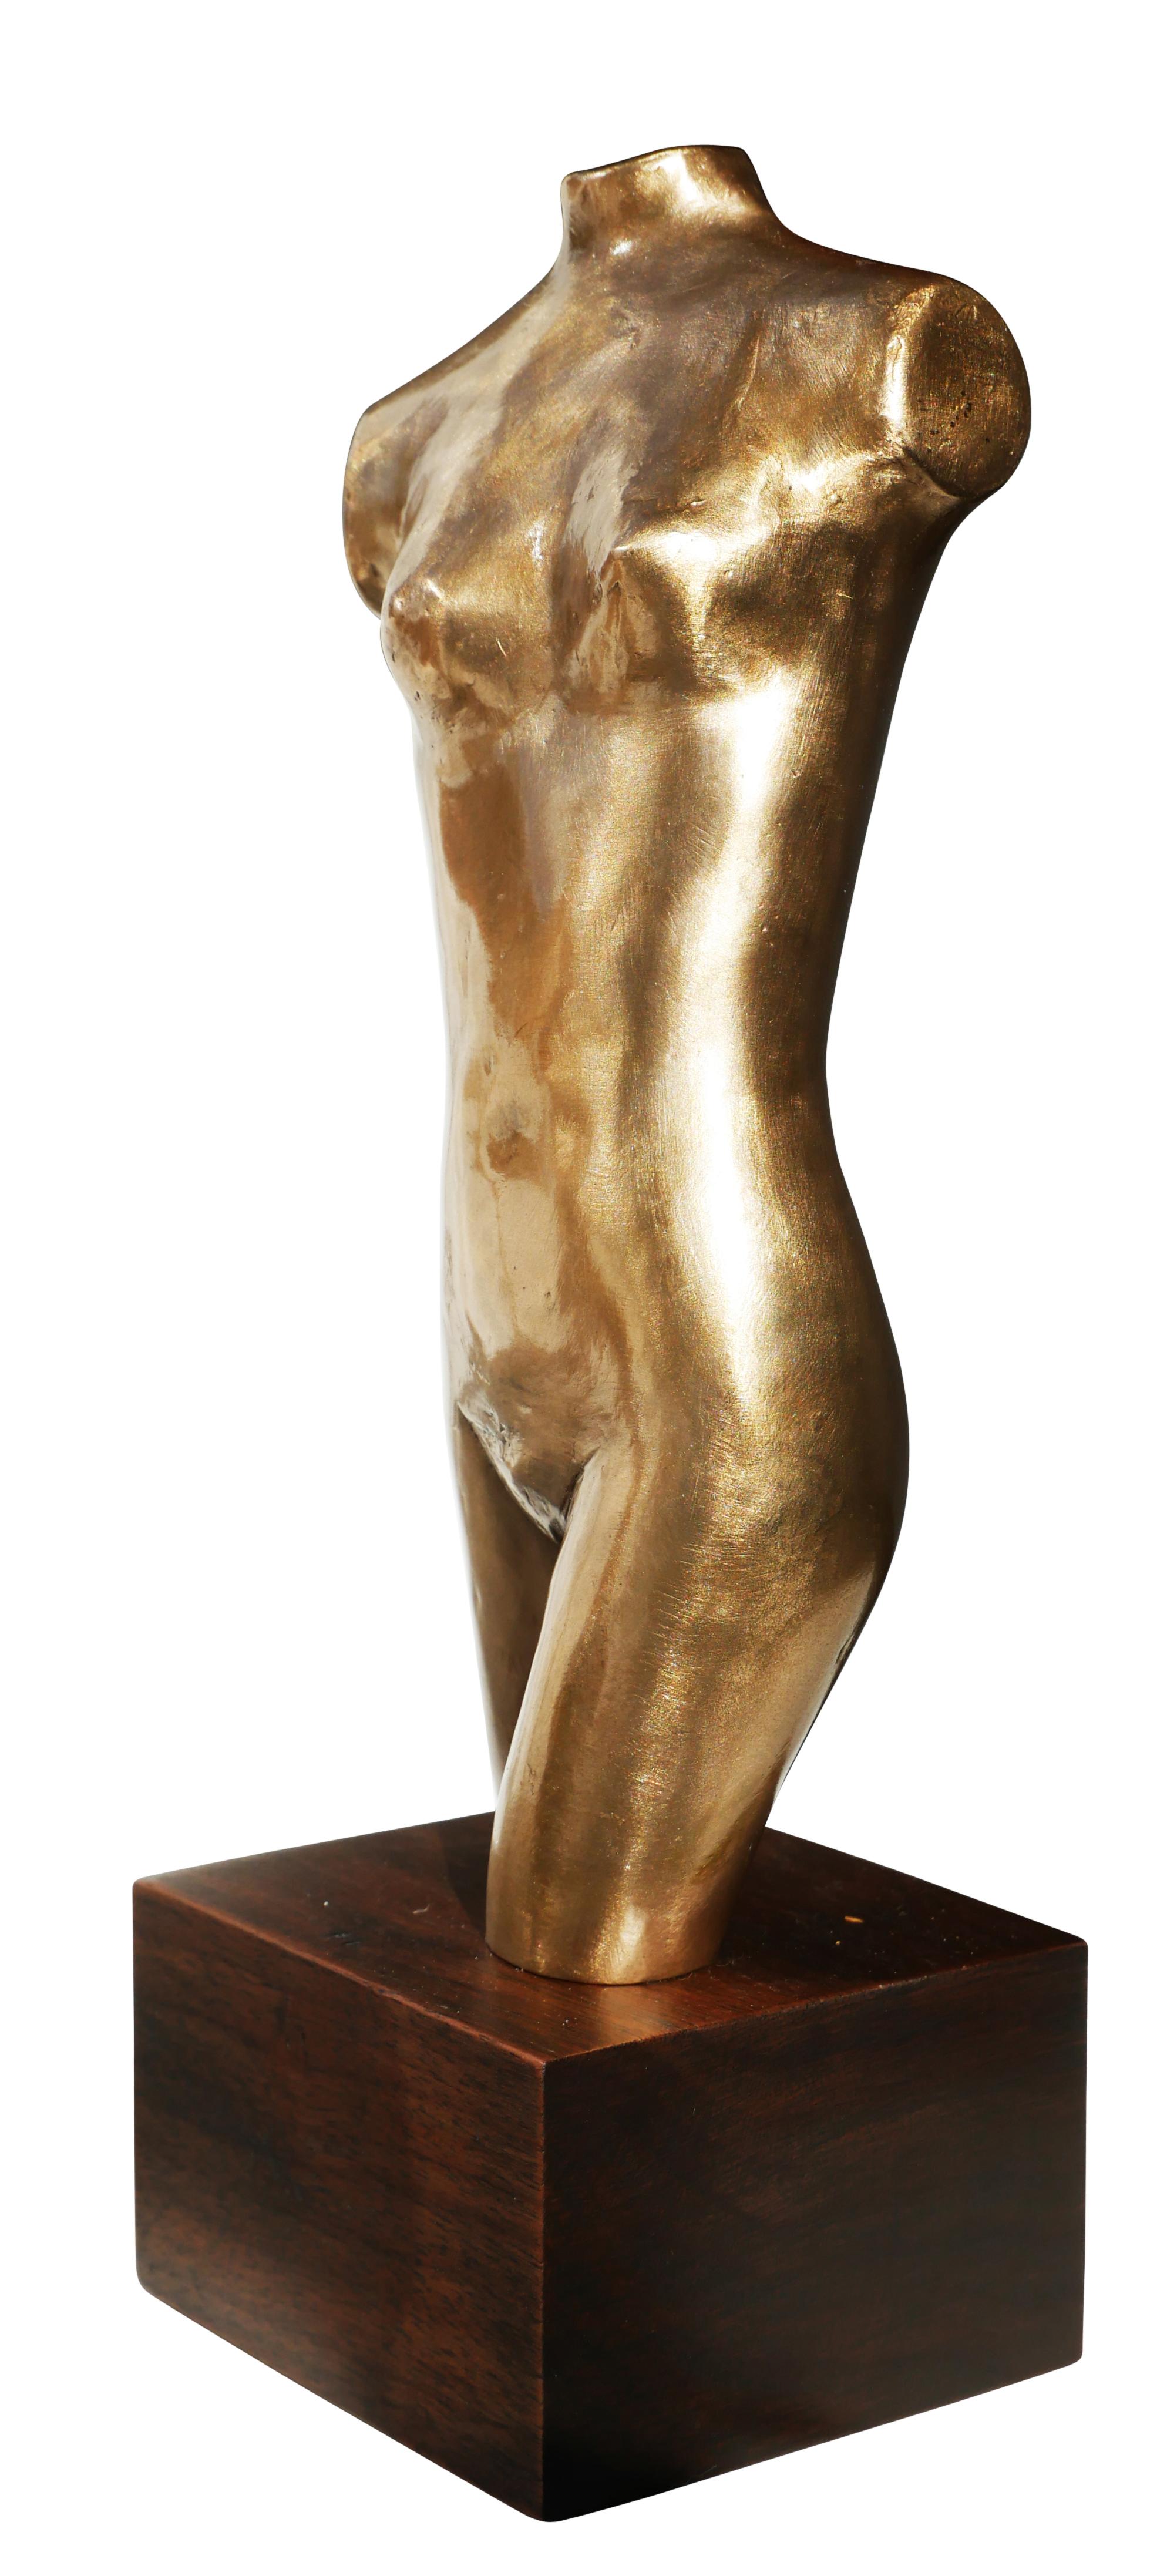 David Adickes Nude Sculpture – Abstrakte, brutale, weibliche Torso-Büste aus Bronze, Skulptur